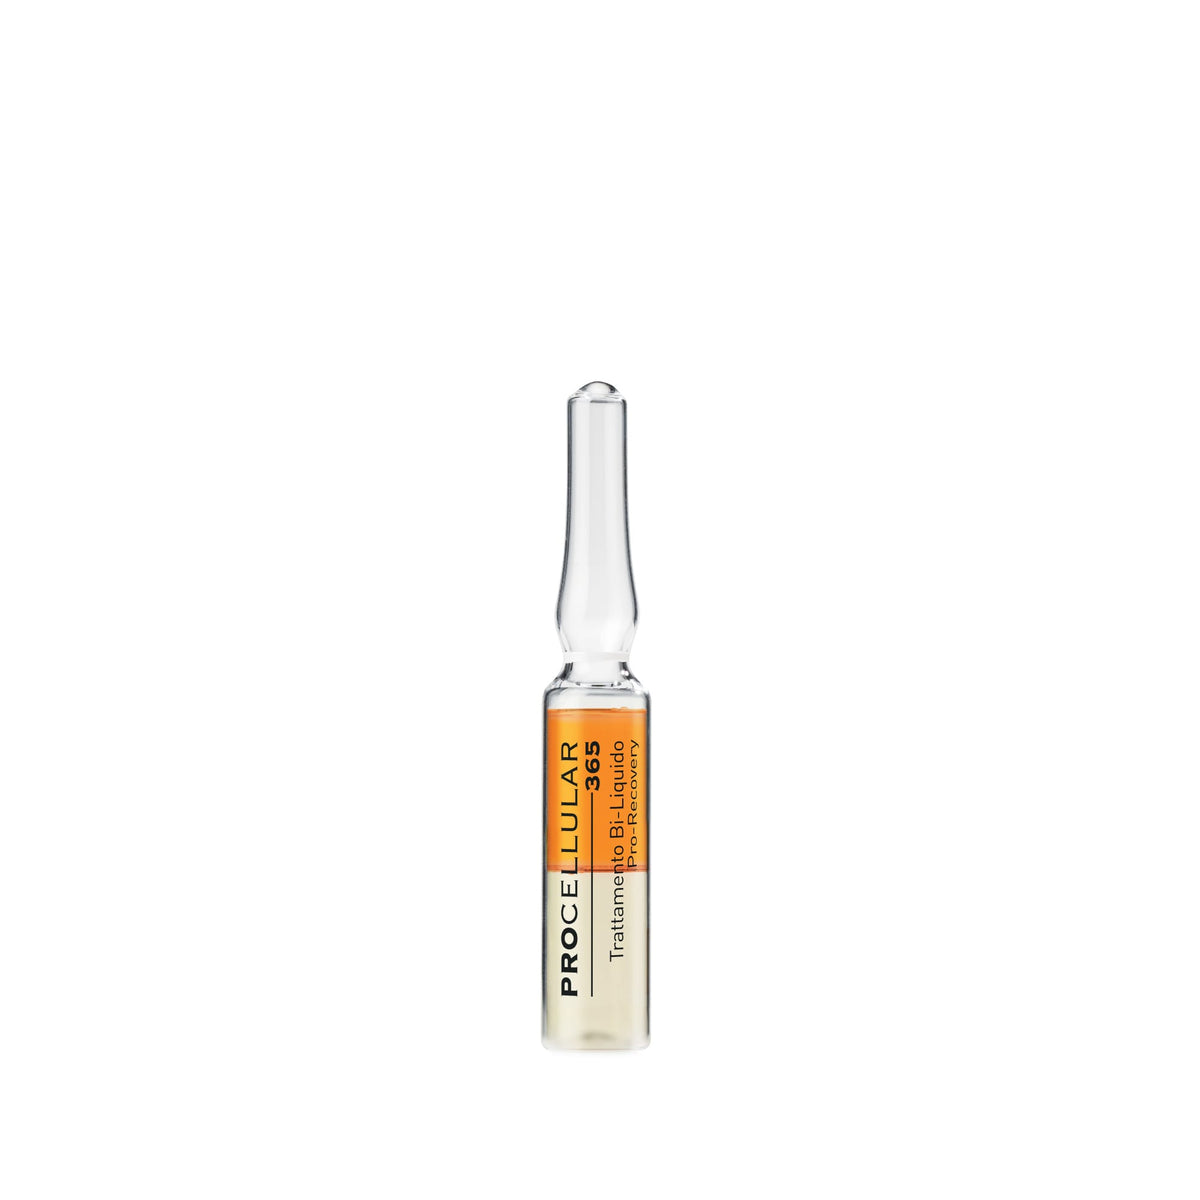 Pro-recovery Bi-Liquid treatment - 14x2ml